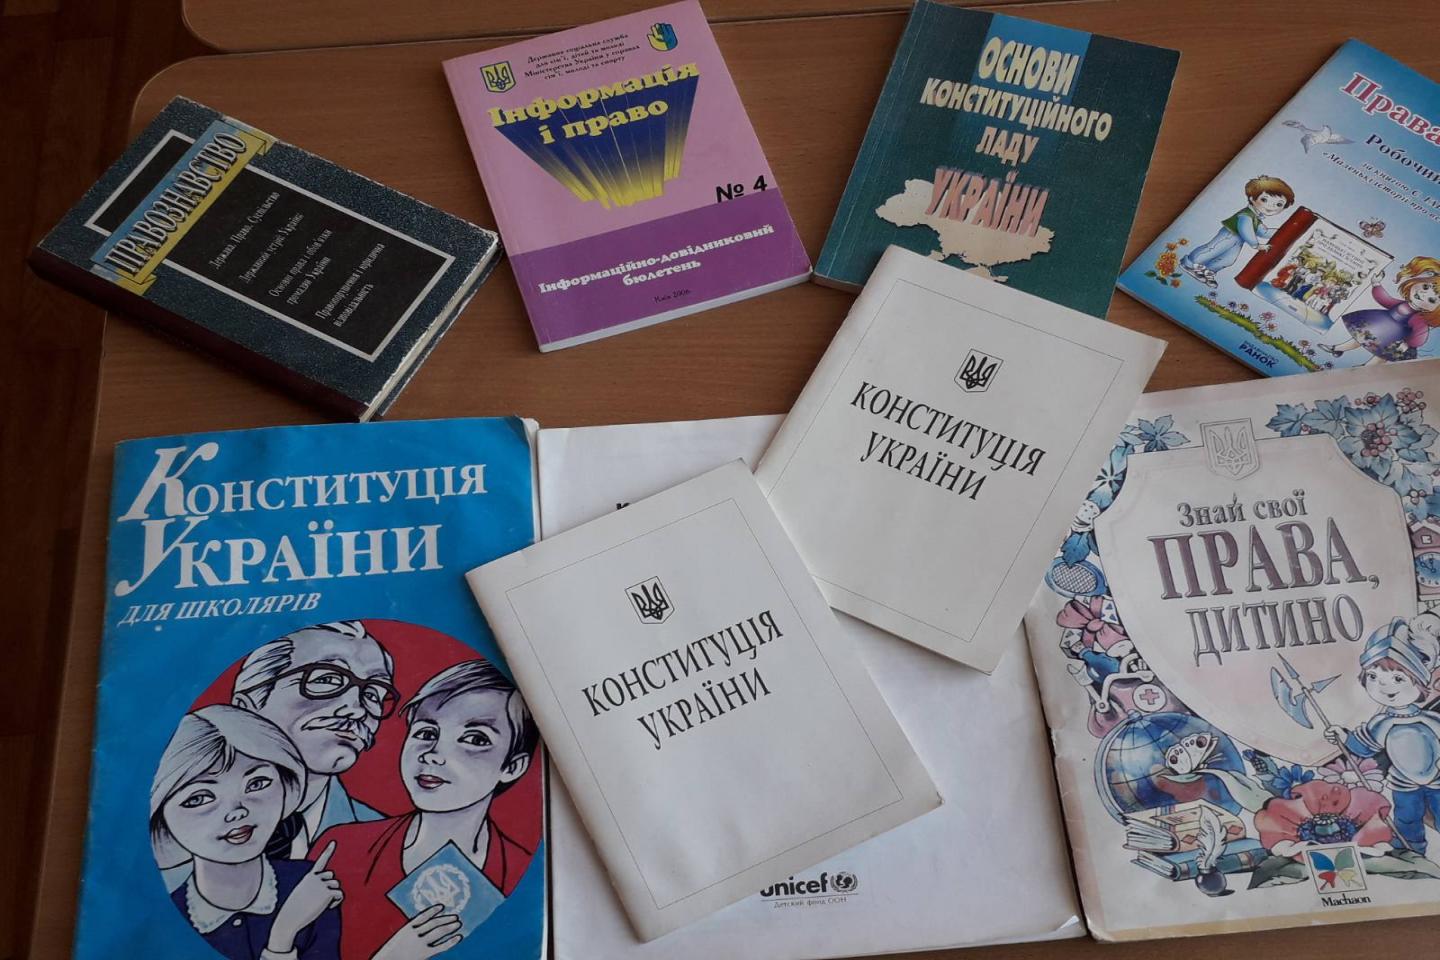 http://dunrada.gov.ua/uploadfile/archive_news/2019/12/05/2019-12-05_4996/images/images-93878.jpg